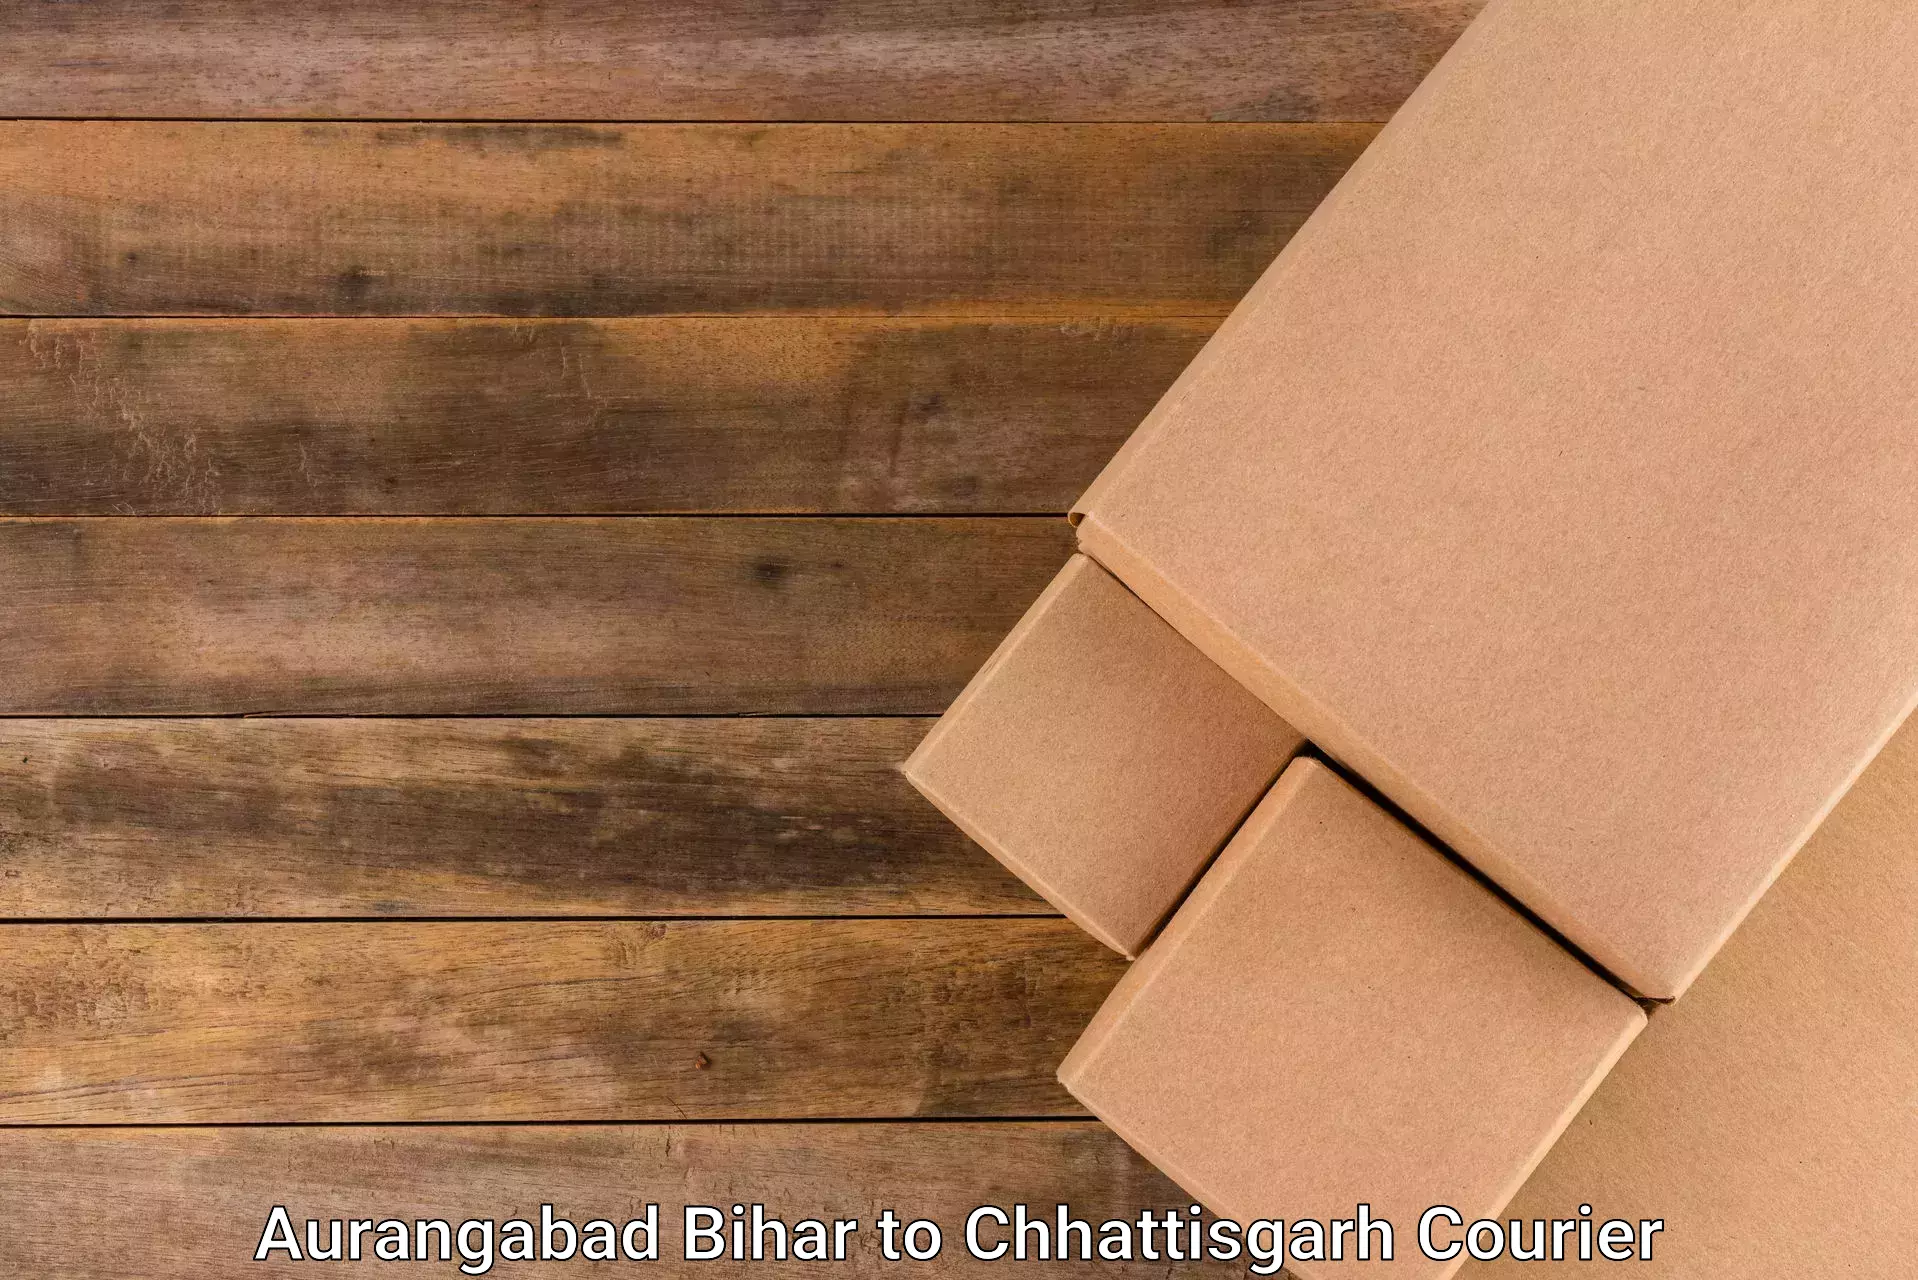 Discounted shipping Aurangabad Bihar to Bastar